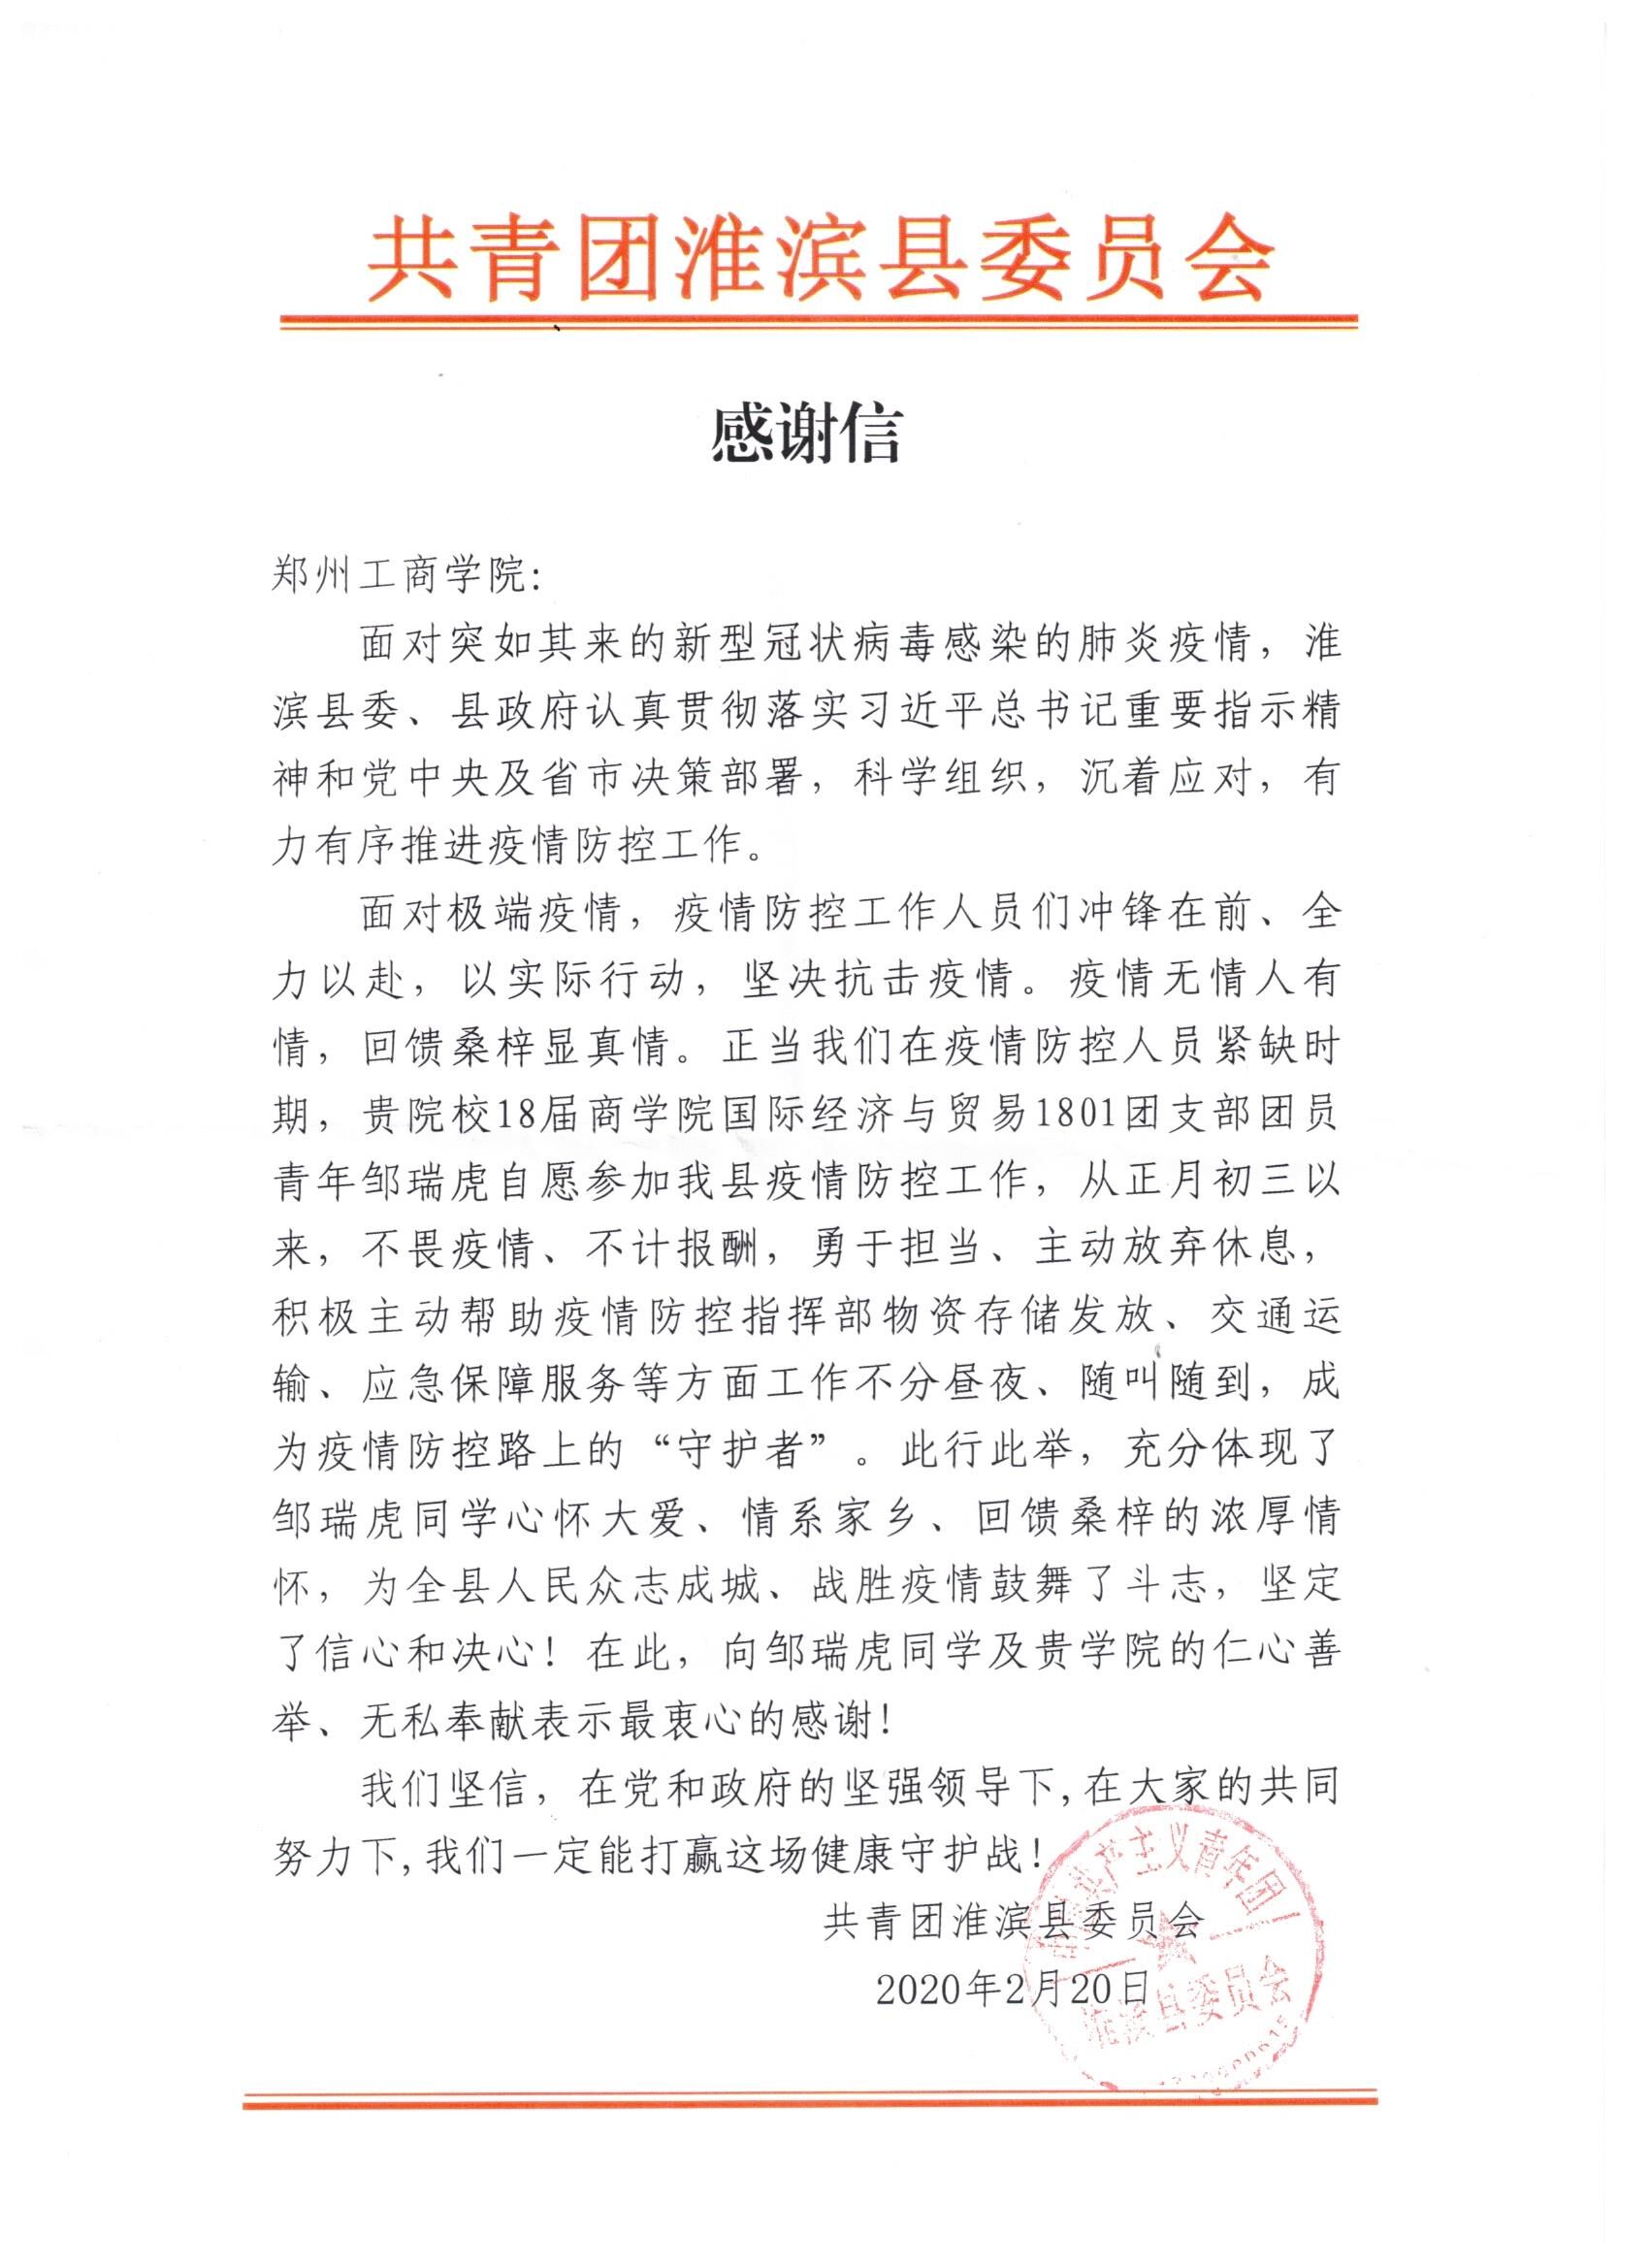 共青团淮滨县委员会向学校发来感谢信